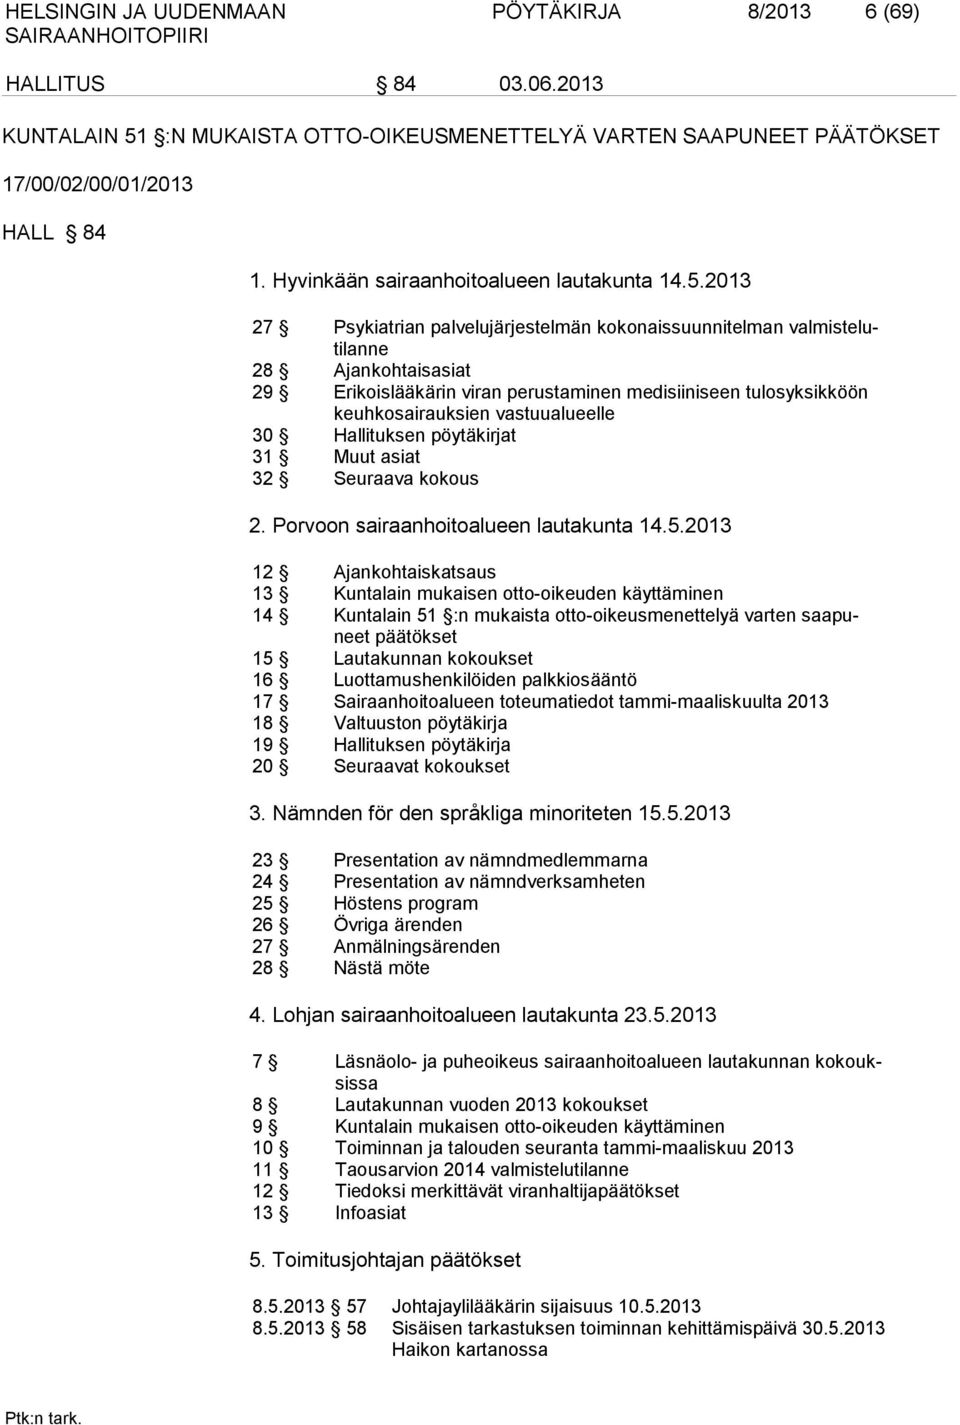 2013 27 Psykiatrian palvelujärjestelmän kokonaissuunnitelman valmistelutilanne 28 Ajankohtaisasiat 29 Erikoislääkärin viran perustaminen medisiiniseen tulosyksikköön keuhkosairauksien vastuualueelle